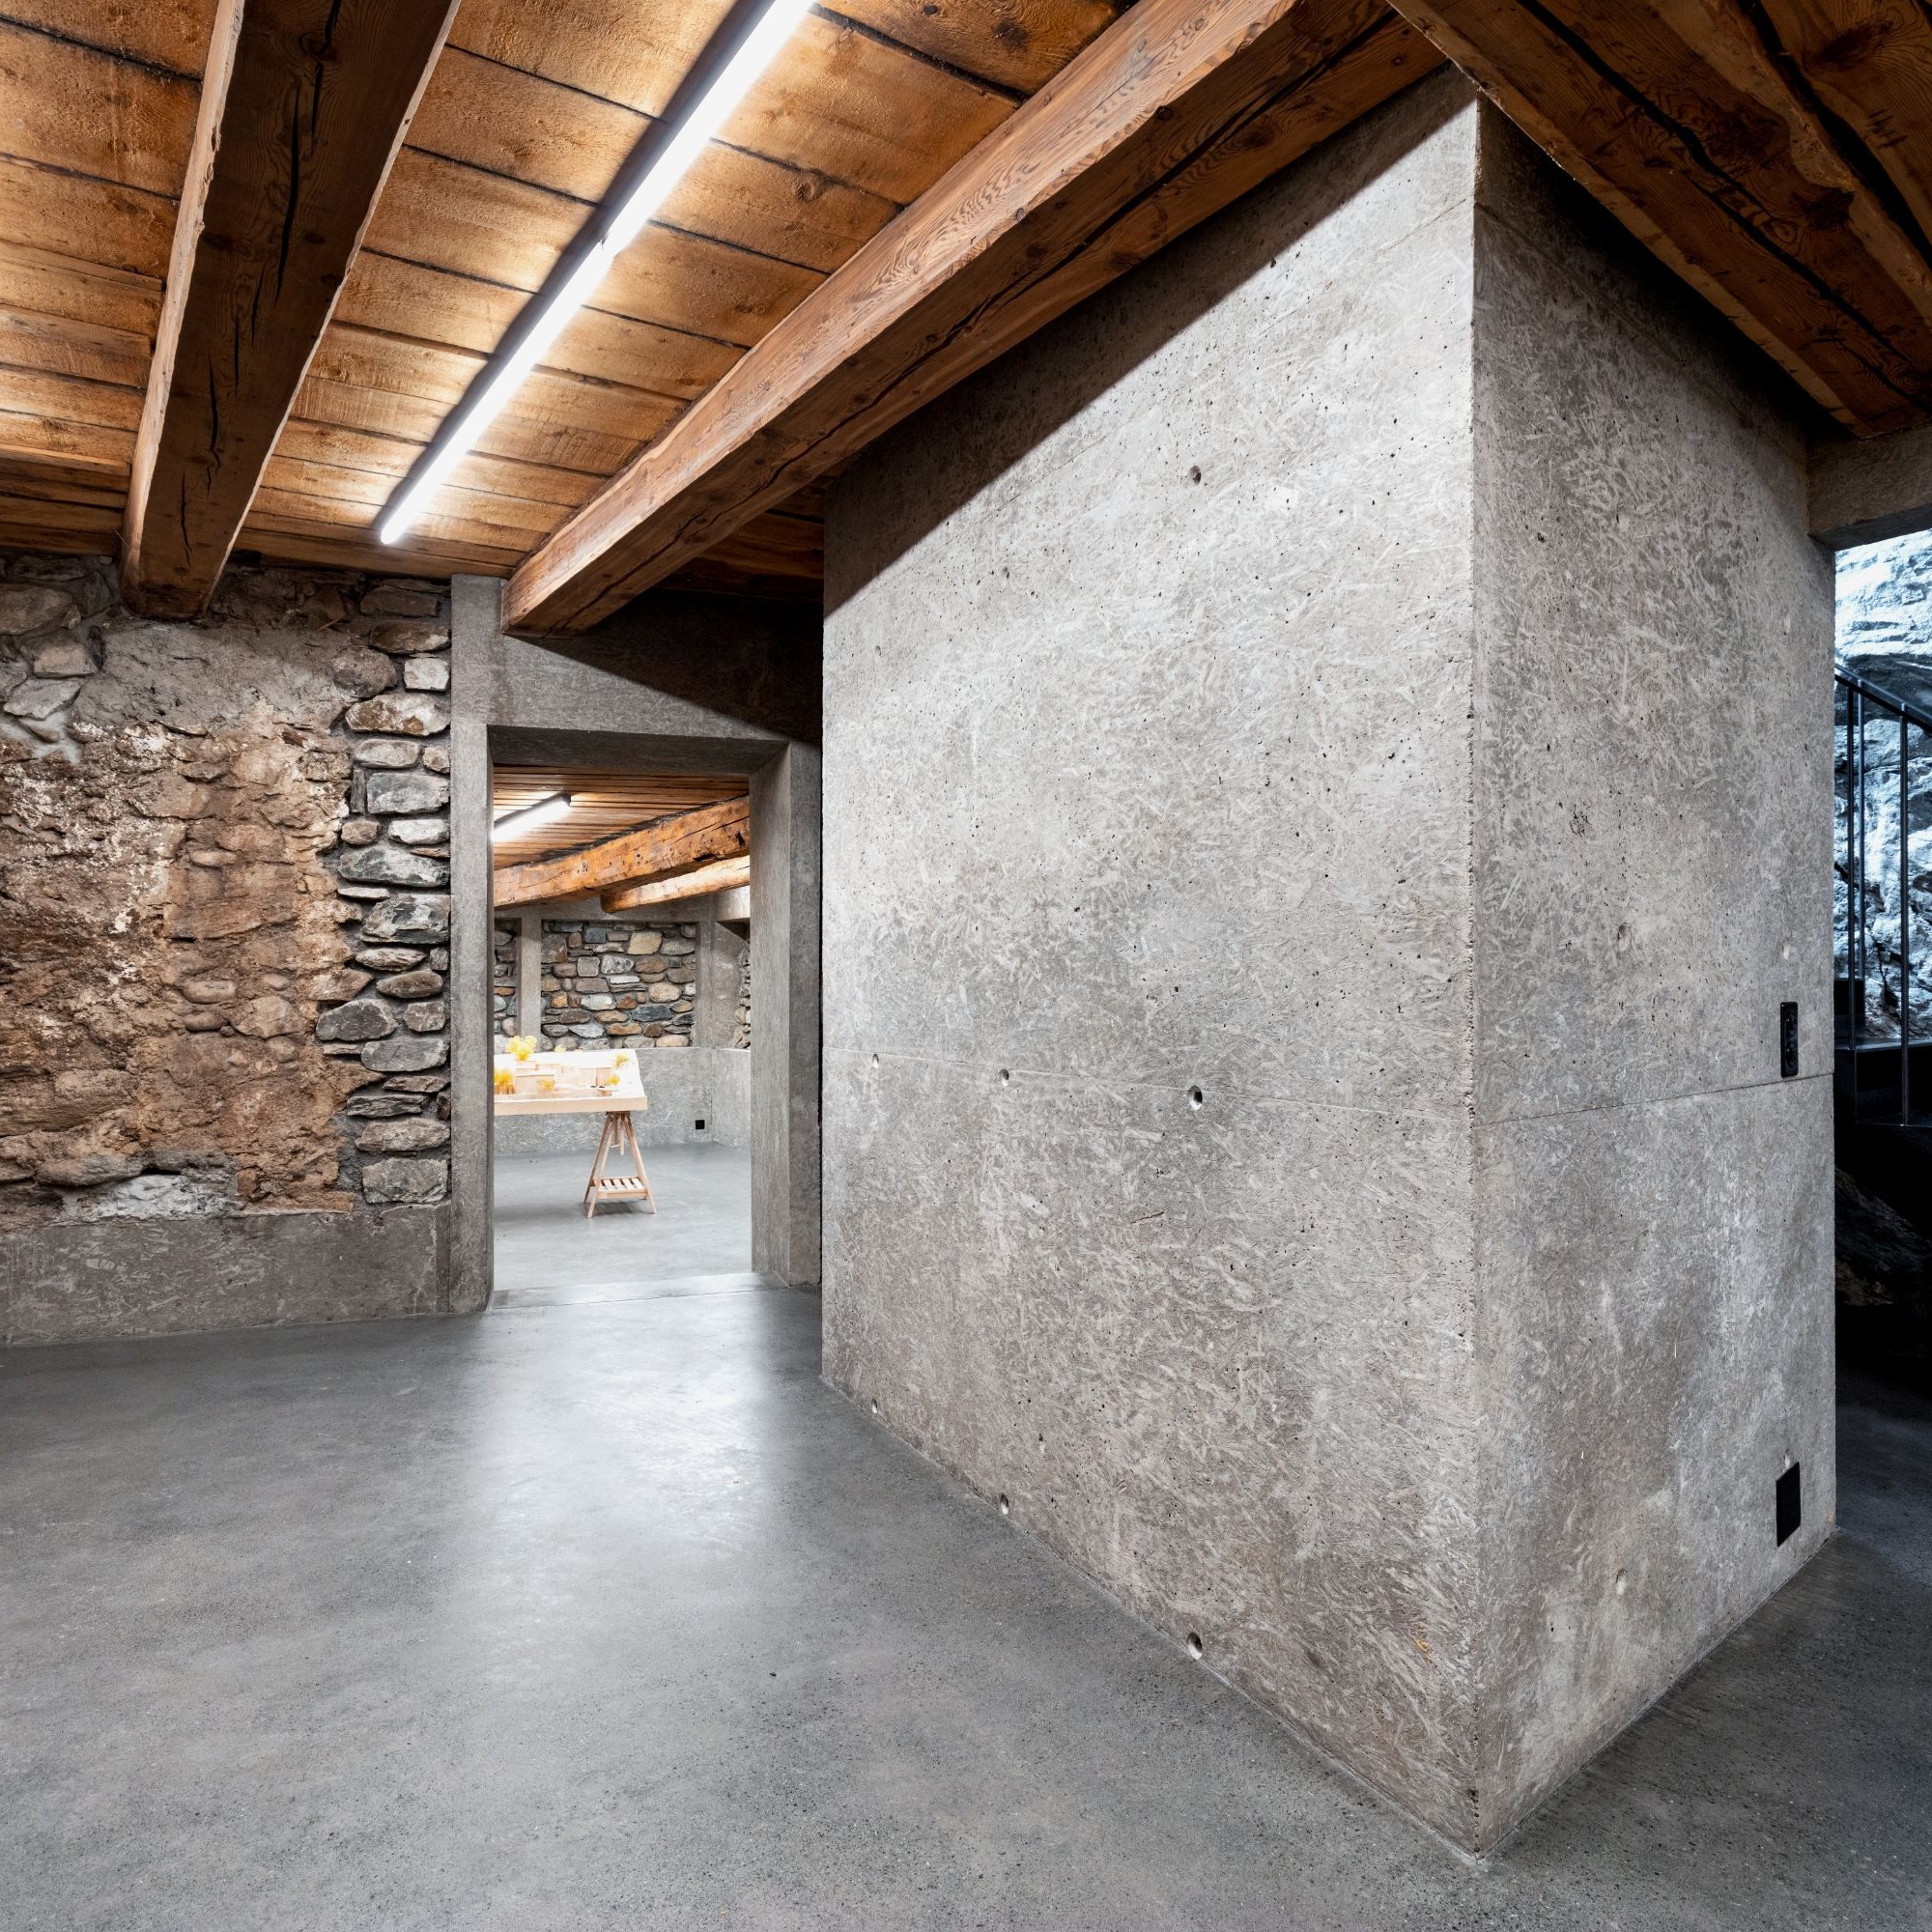 Chesa Della Santa, Untergeschoss: Unterfangung der traditionellen Mauerwerkswände, Sanitärkern aus Waschbeton, Untersicht des ursprünglichen Bodens in Lärche und Stahltreppe entlang der bestehenden Felswand.